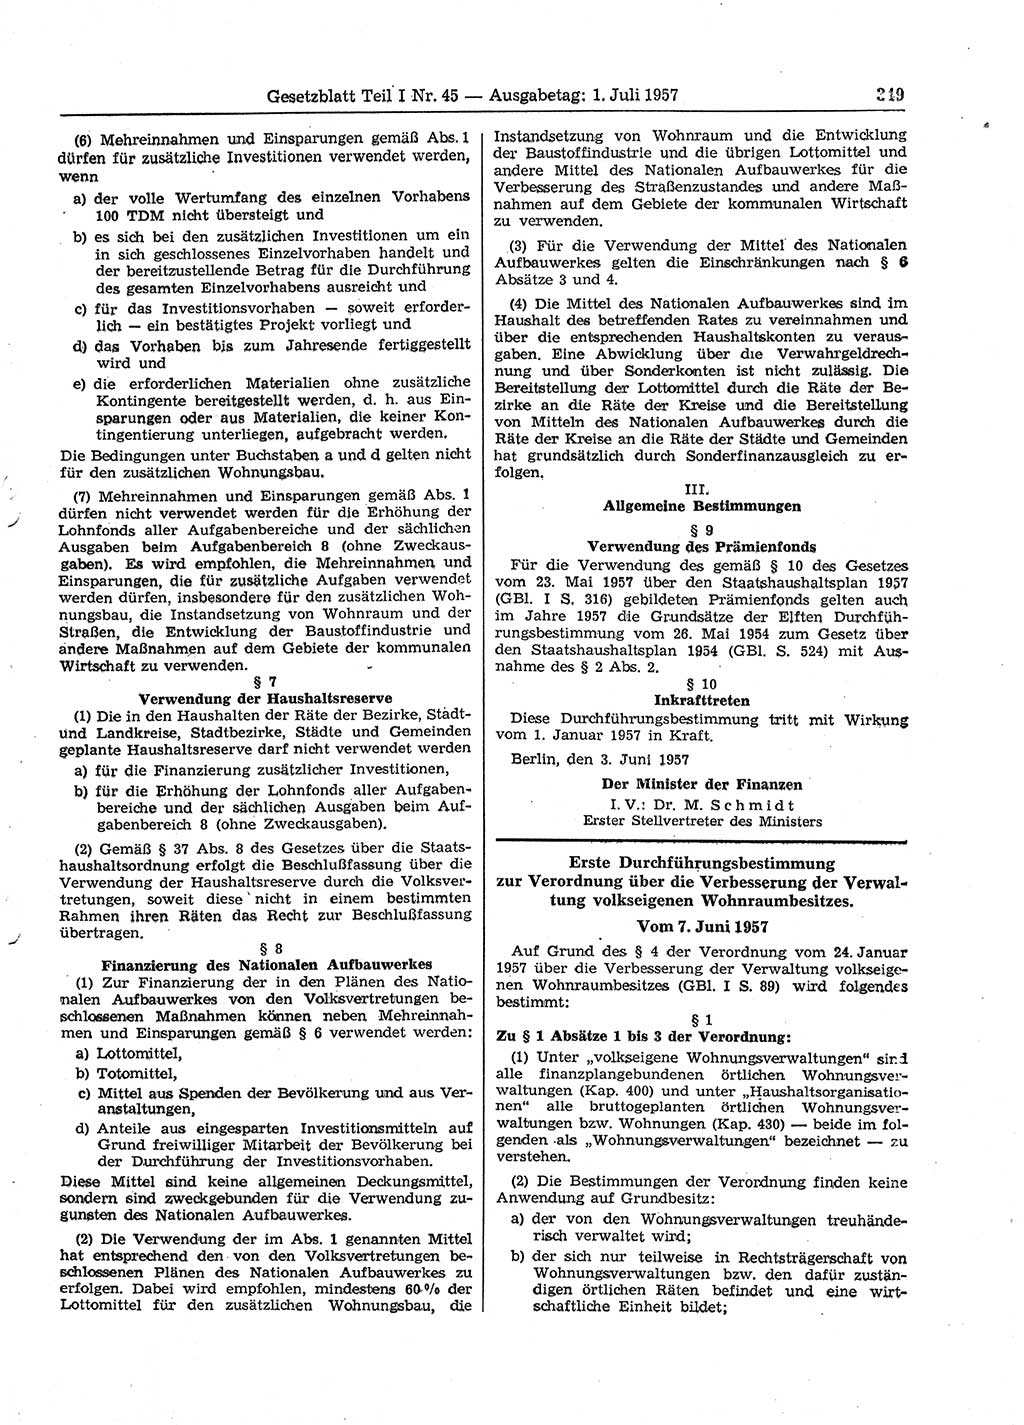 Gesetzblatt (GBl.) der Deutschen Demokratischen Republik (DDR) Teil Ⅰ 1957, Seite 349 (GBl. DDR Ⅰ 1957, S. 349)